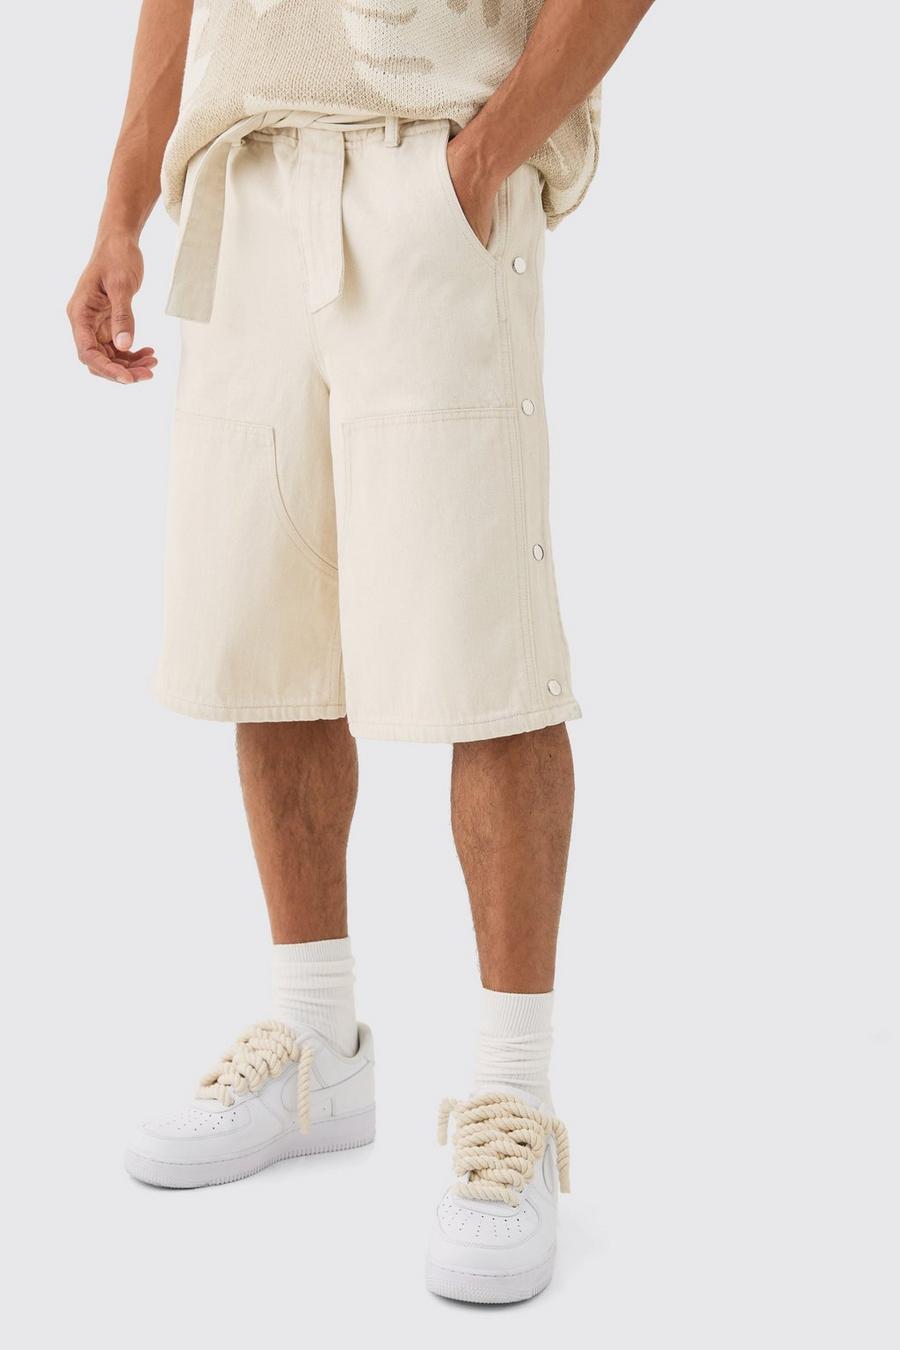 Pantalón corto vaquero estilo carpintero holgado con cintura elástica y botones de presión en color crudo, Ecru